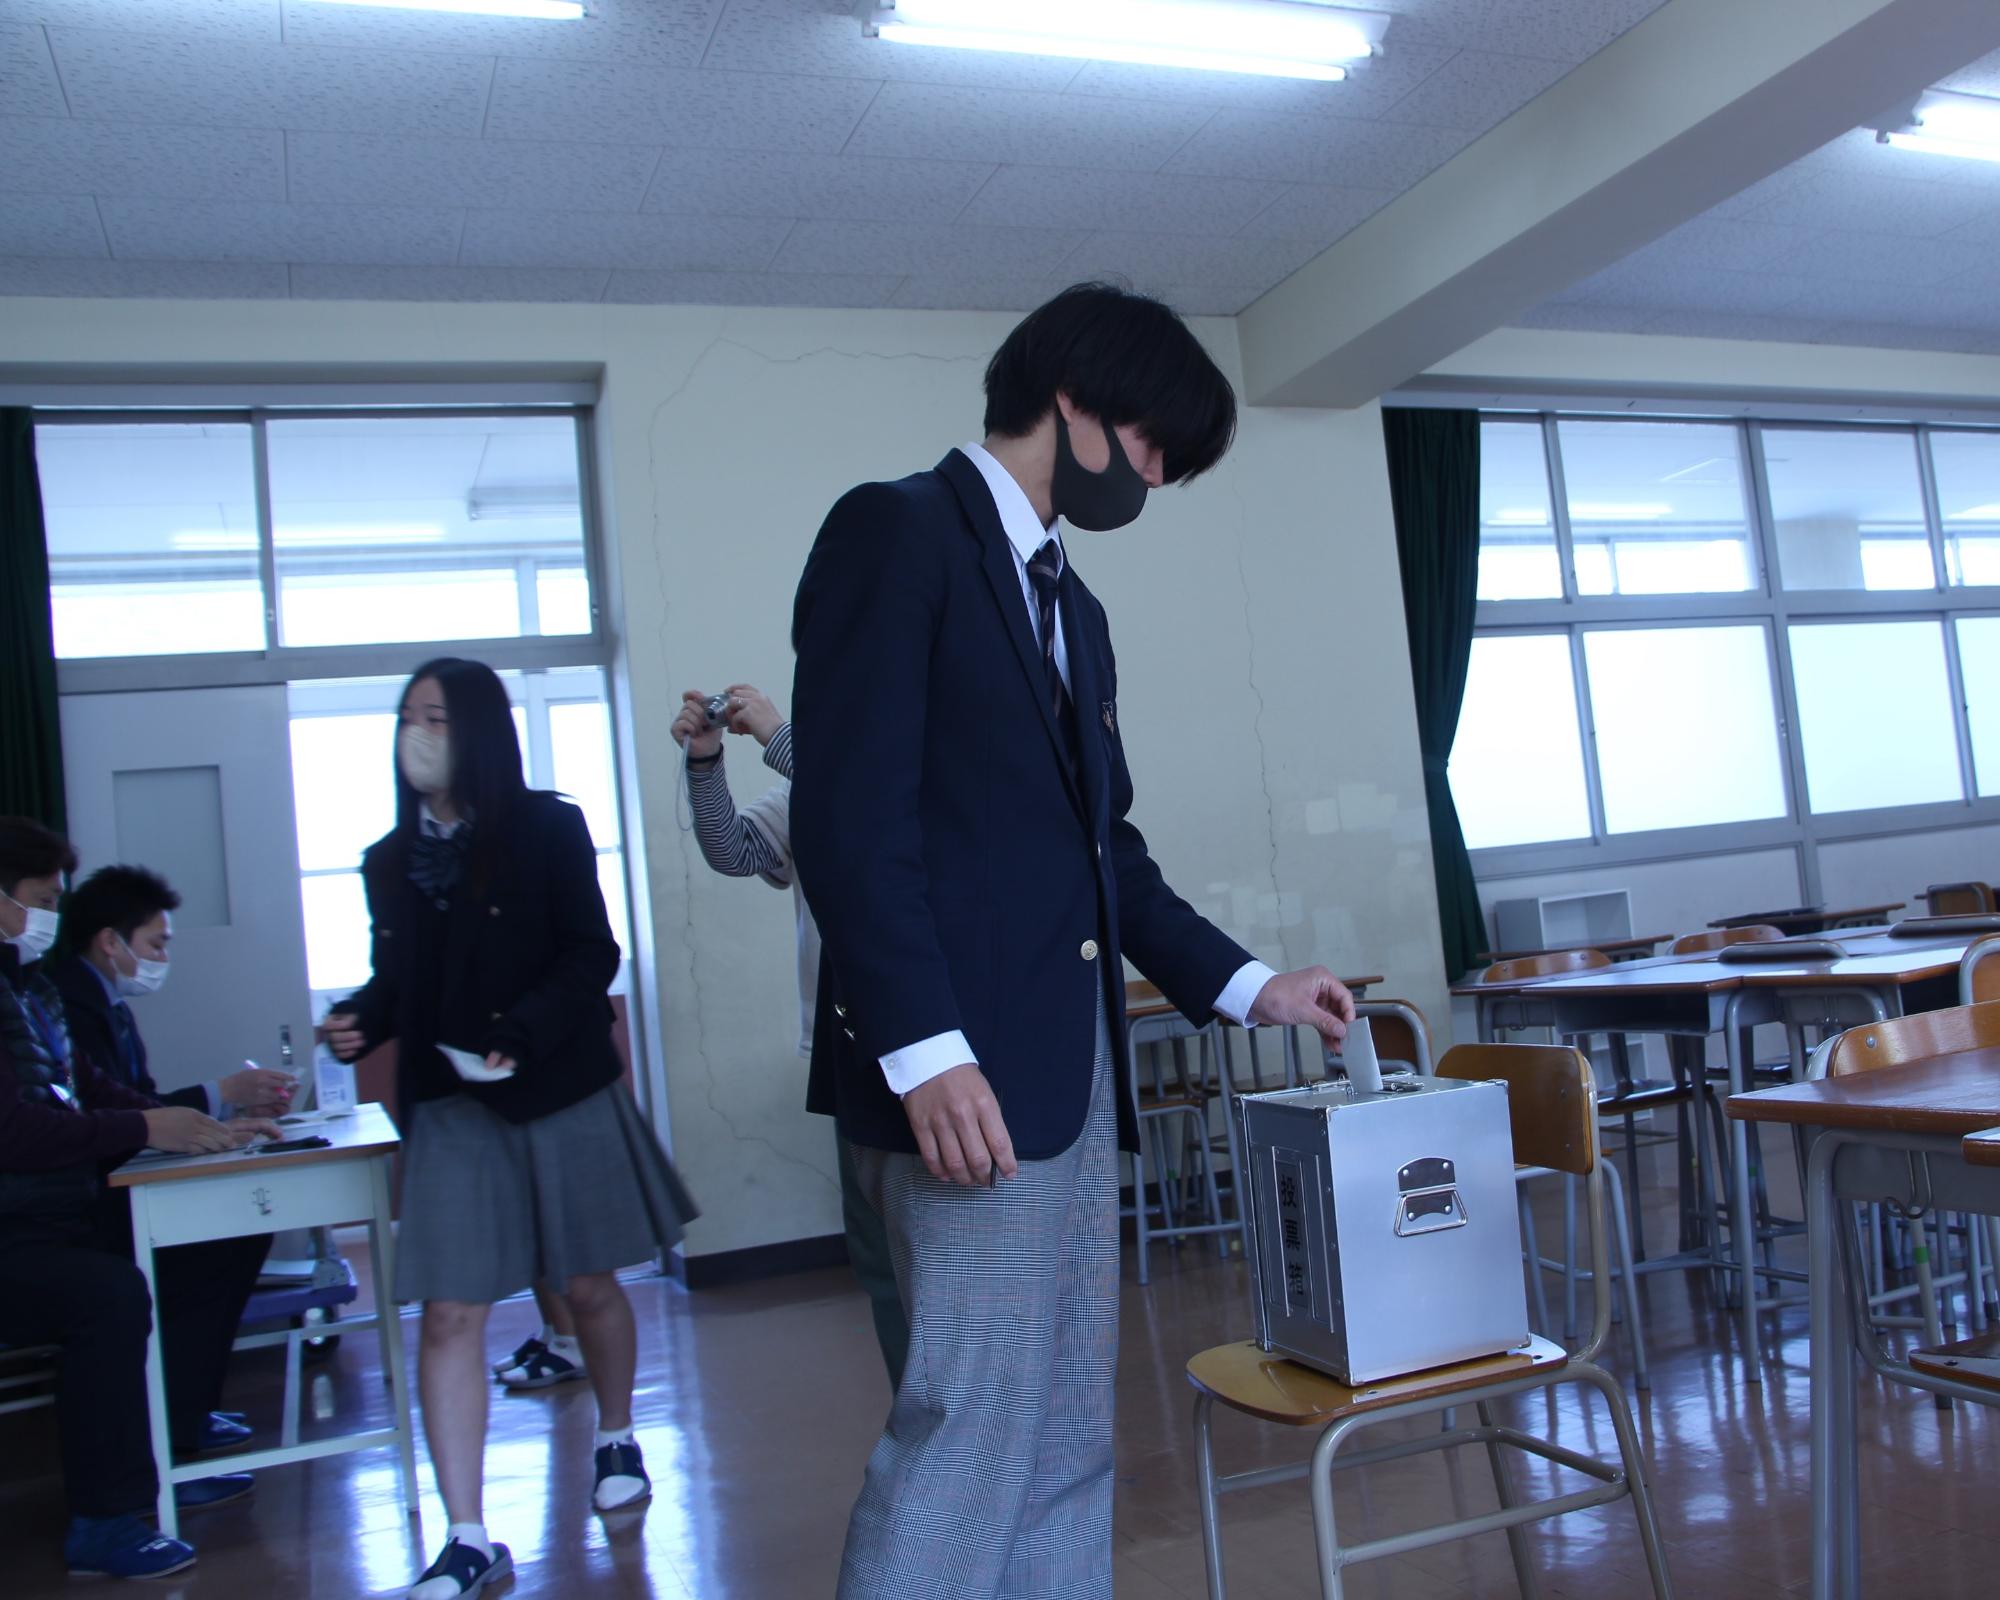 教室内に設置した投票箱へ候補者名を記入した投票用紙を投函する高校生の写真